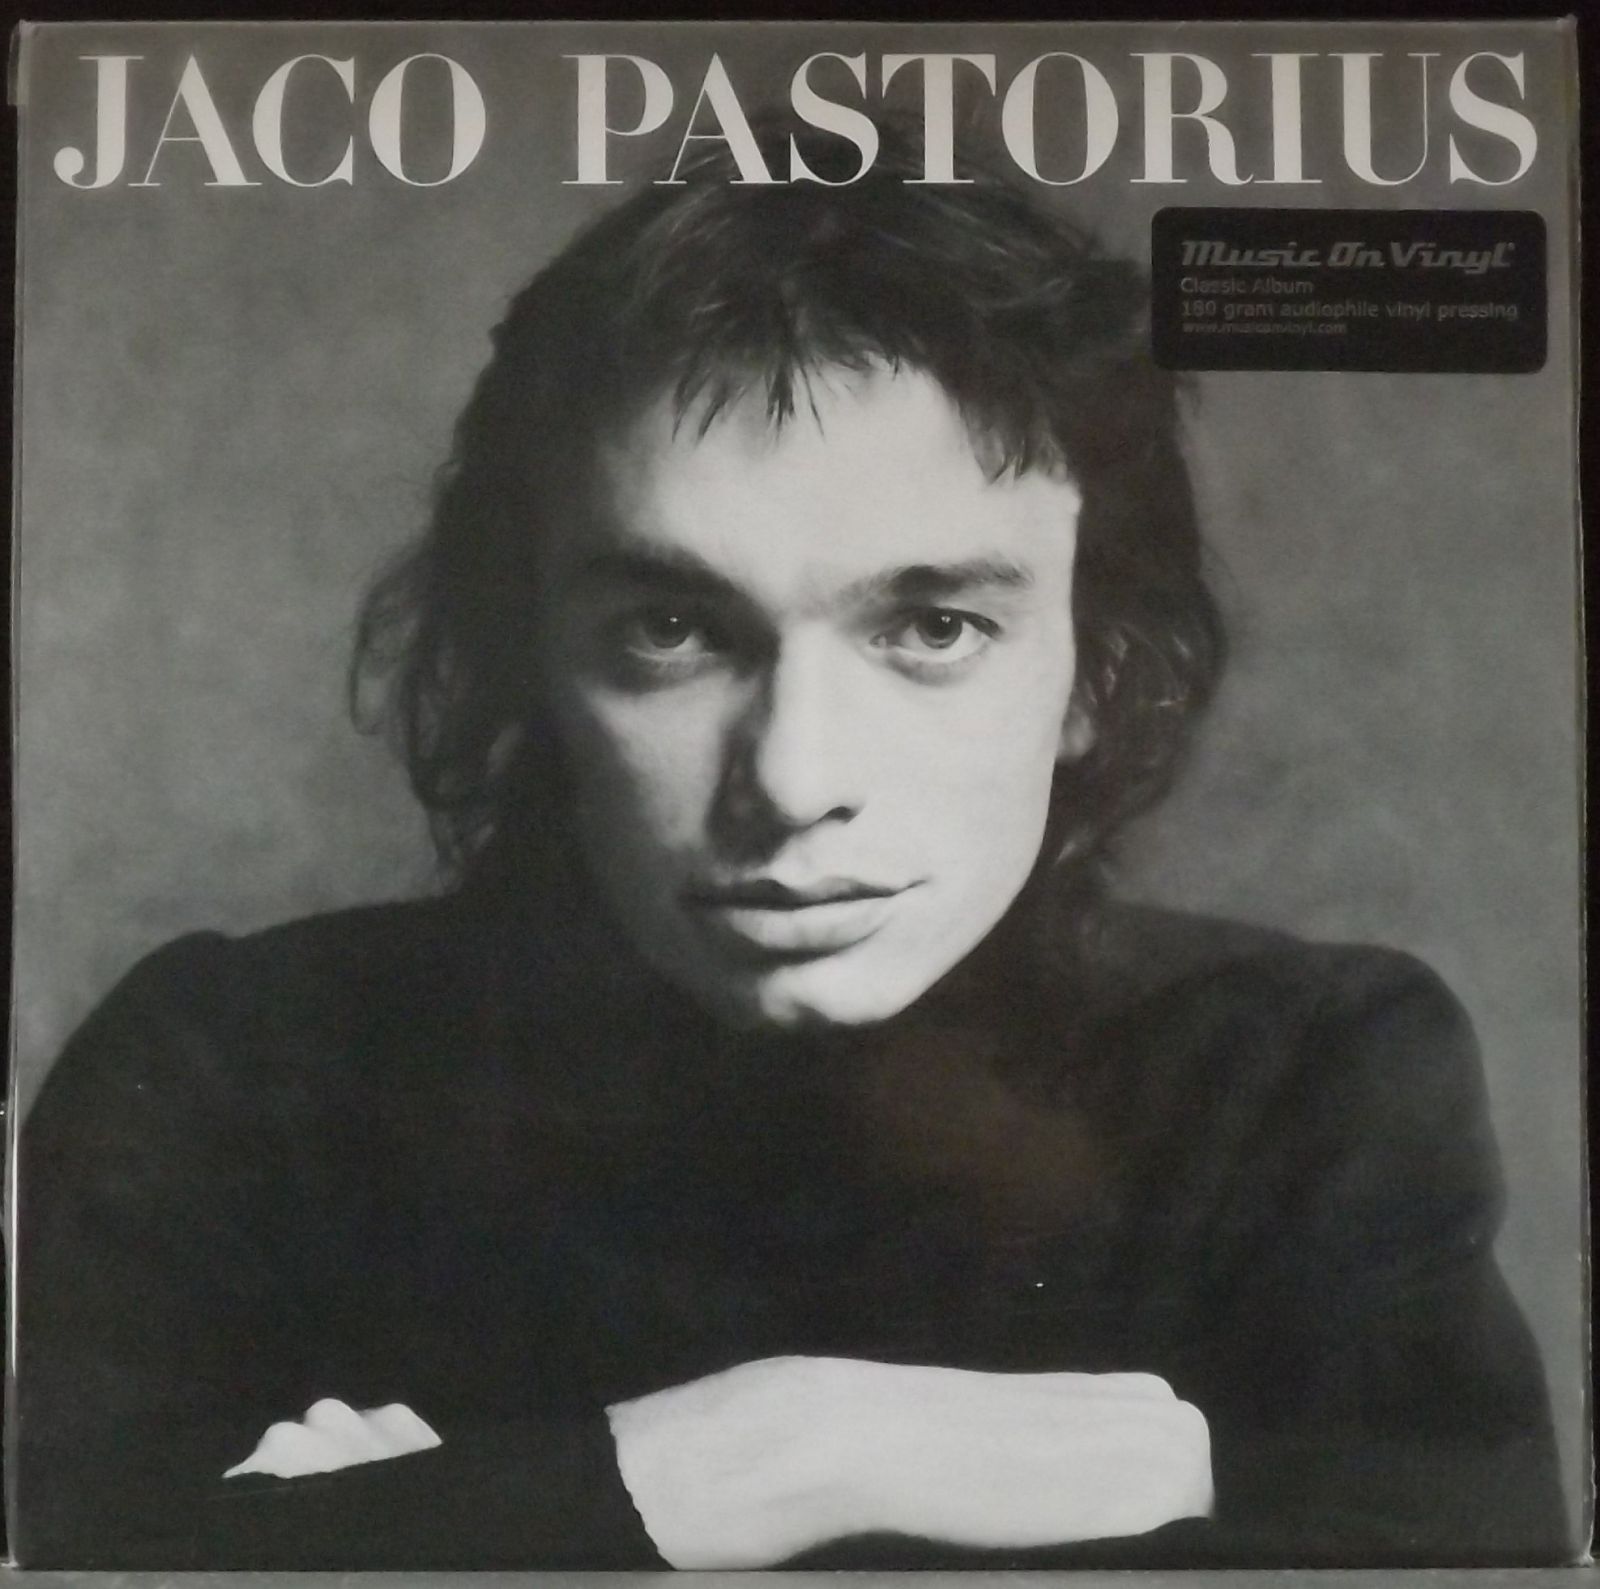 виниловая пластинка pastorius jaco jazz street coloured 8719262031050 Виниловая пластинка Pastorius, Jaco, Jaco Pastorius (8713748980467)